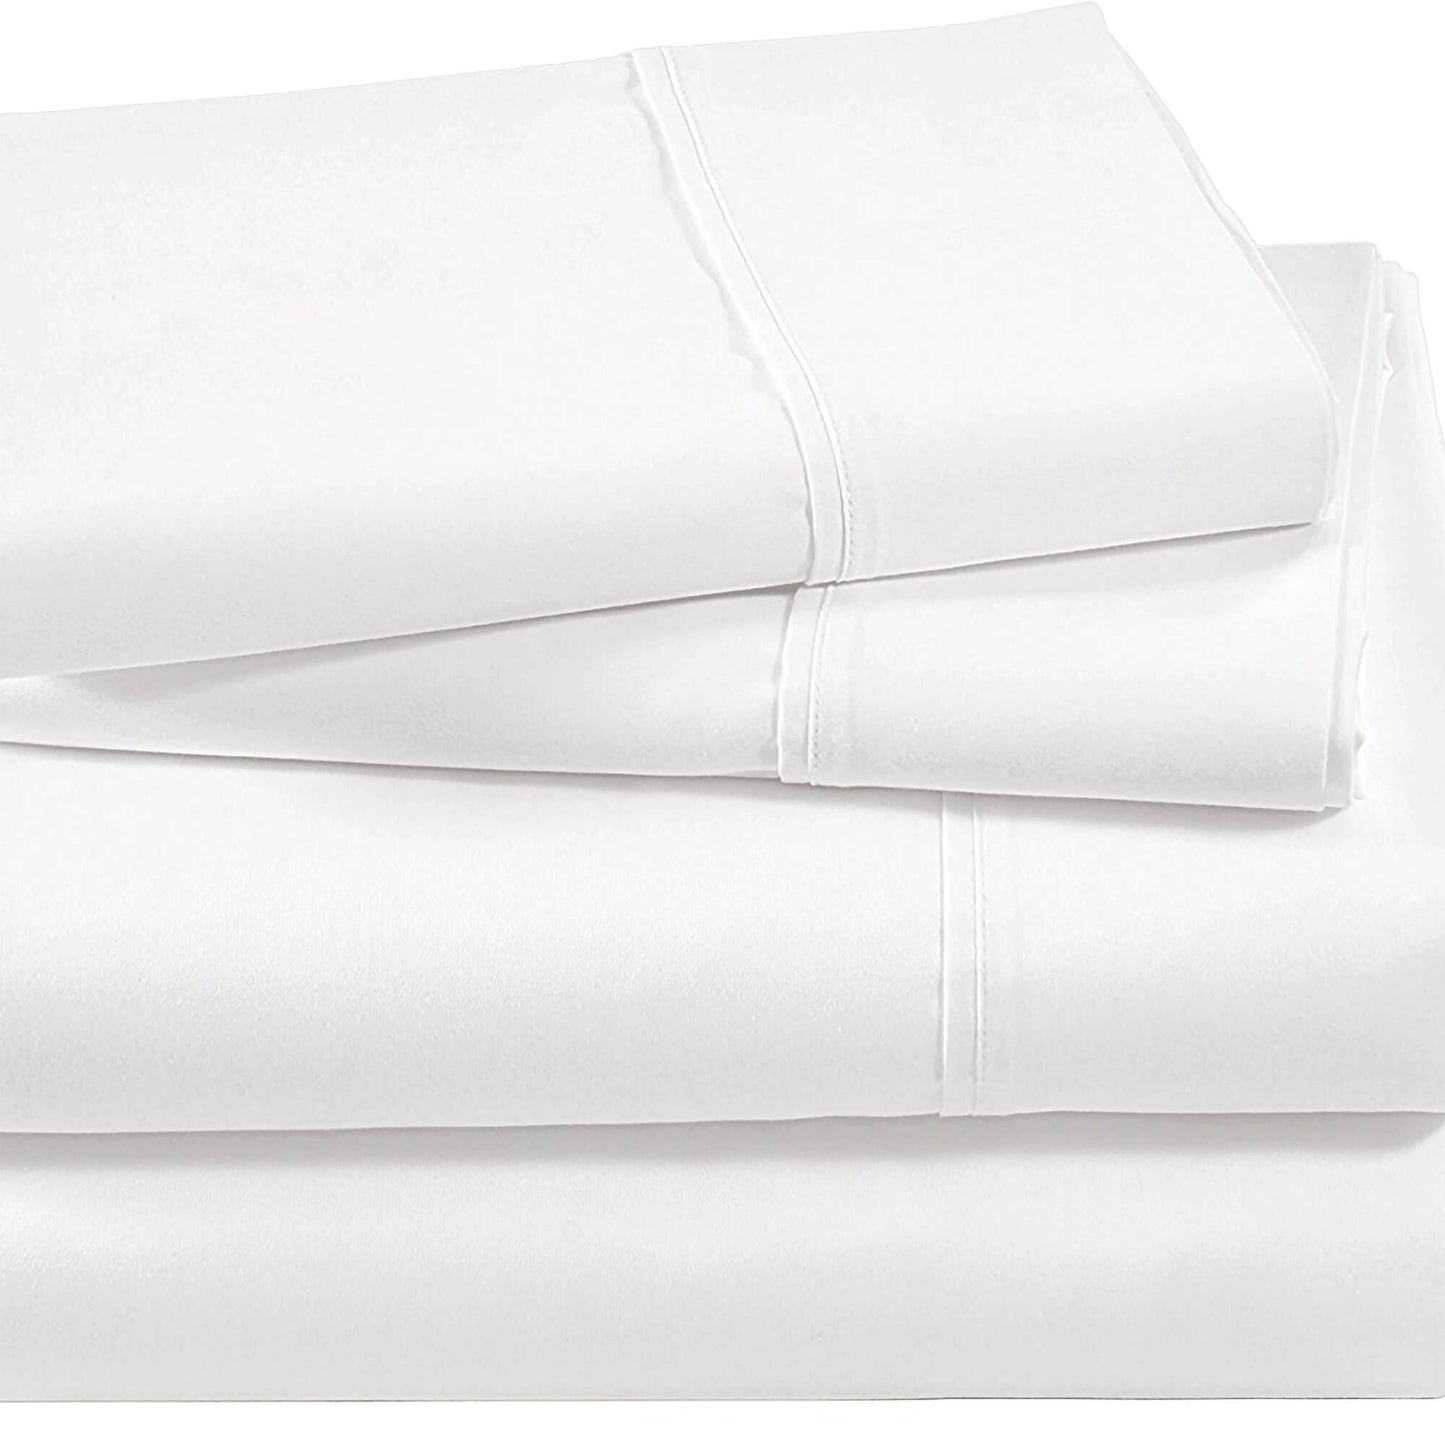 Lavish Touch 100% Cotton Mega King Bed 4pc Sheet Set - White - Kea Global